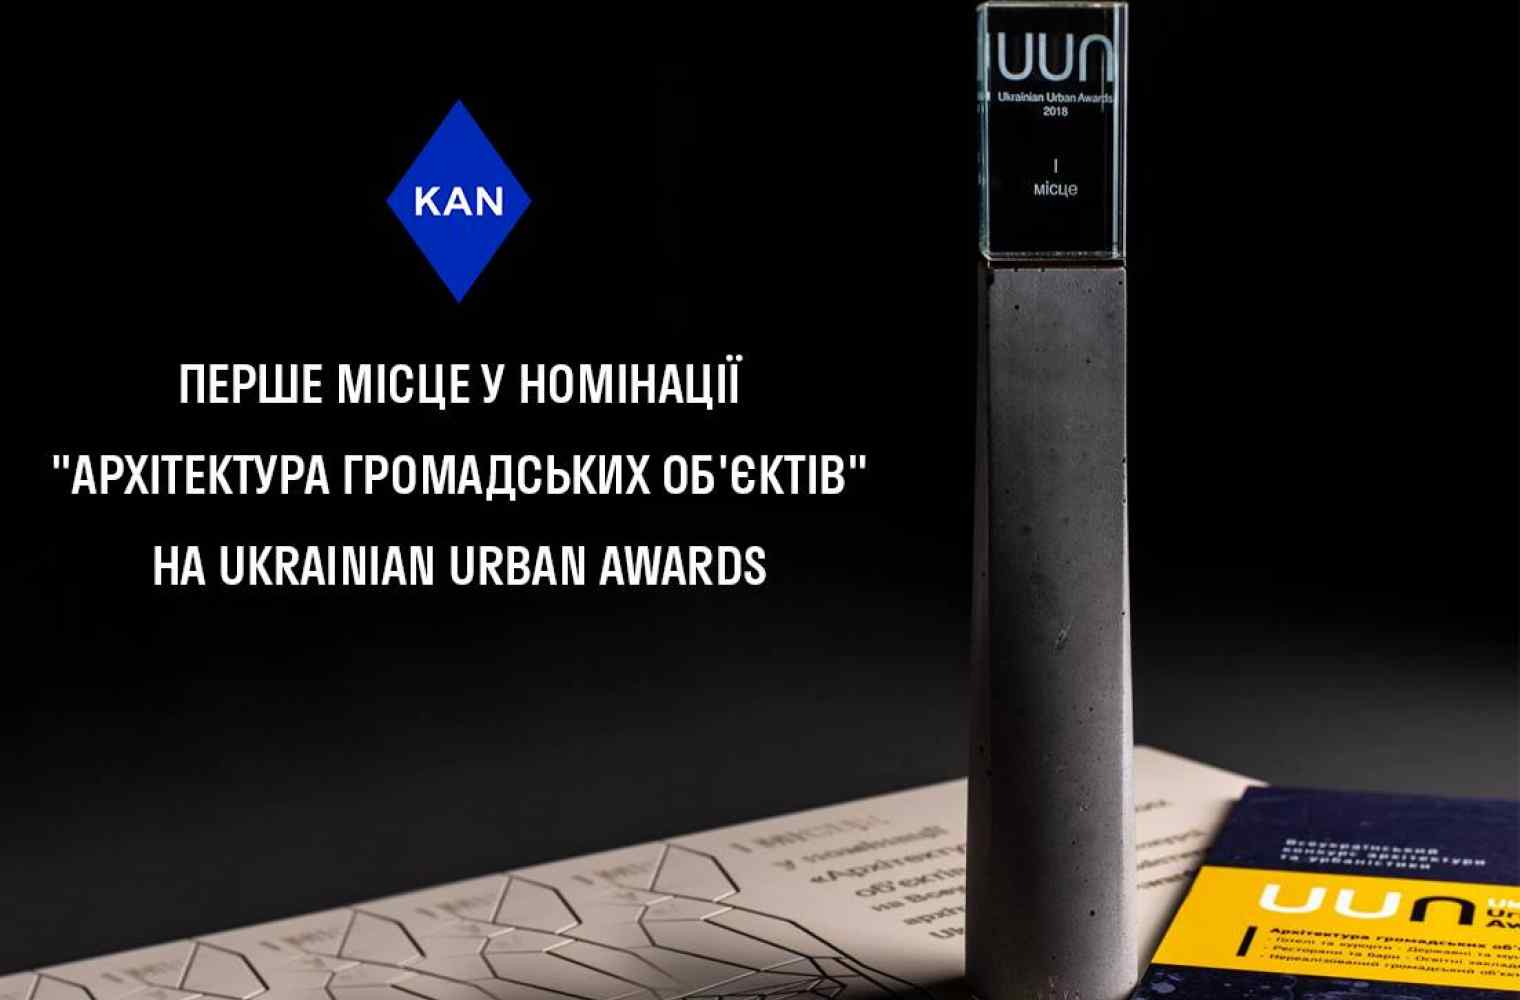 KAN получил первое место на Ukrainian Urban Awards за Печерскую международную школу